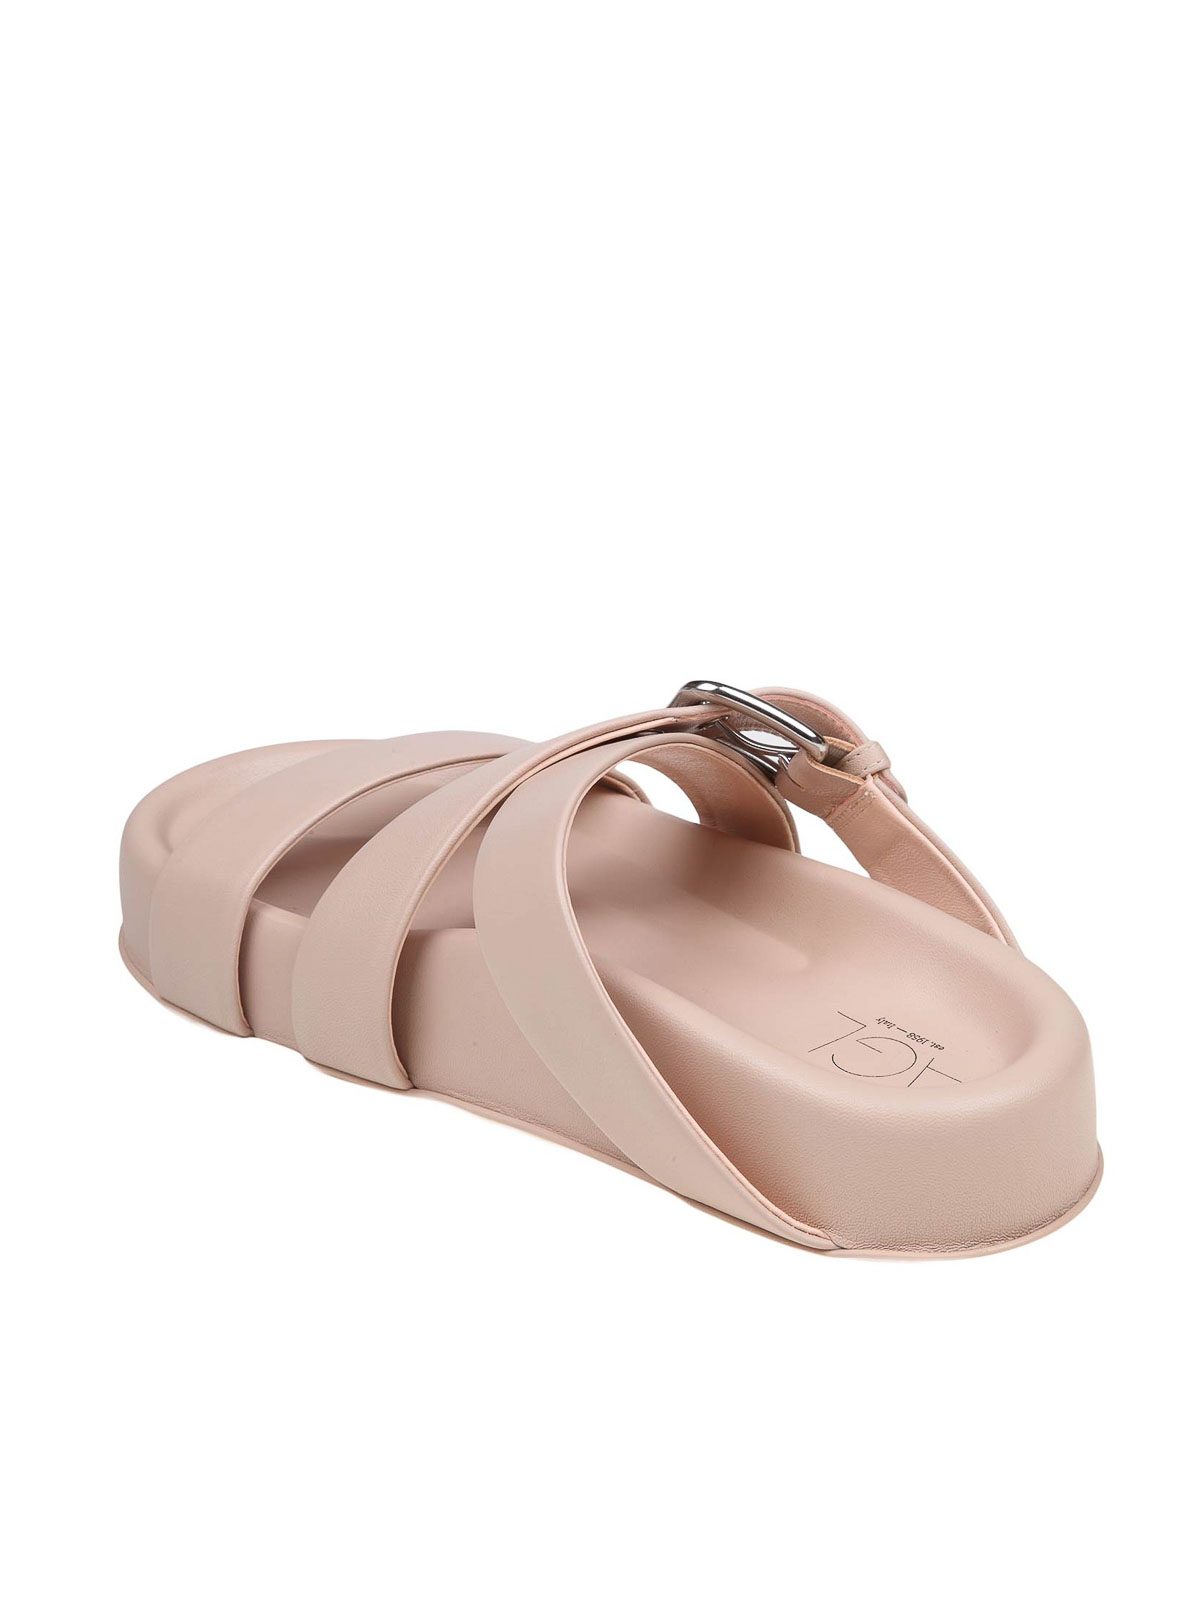 Shop Agl Attilio Giusti Leombruni Leather Sandals In Nude & Neutrals